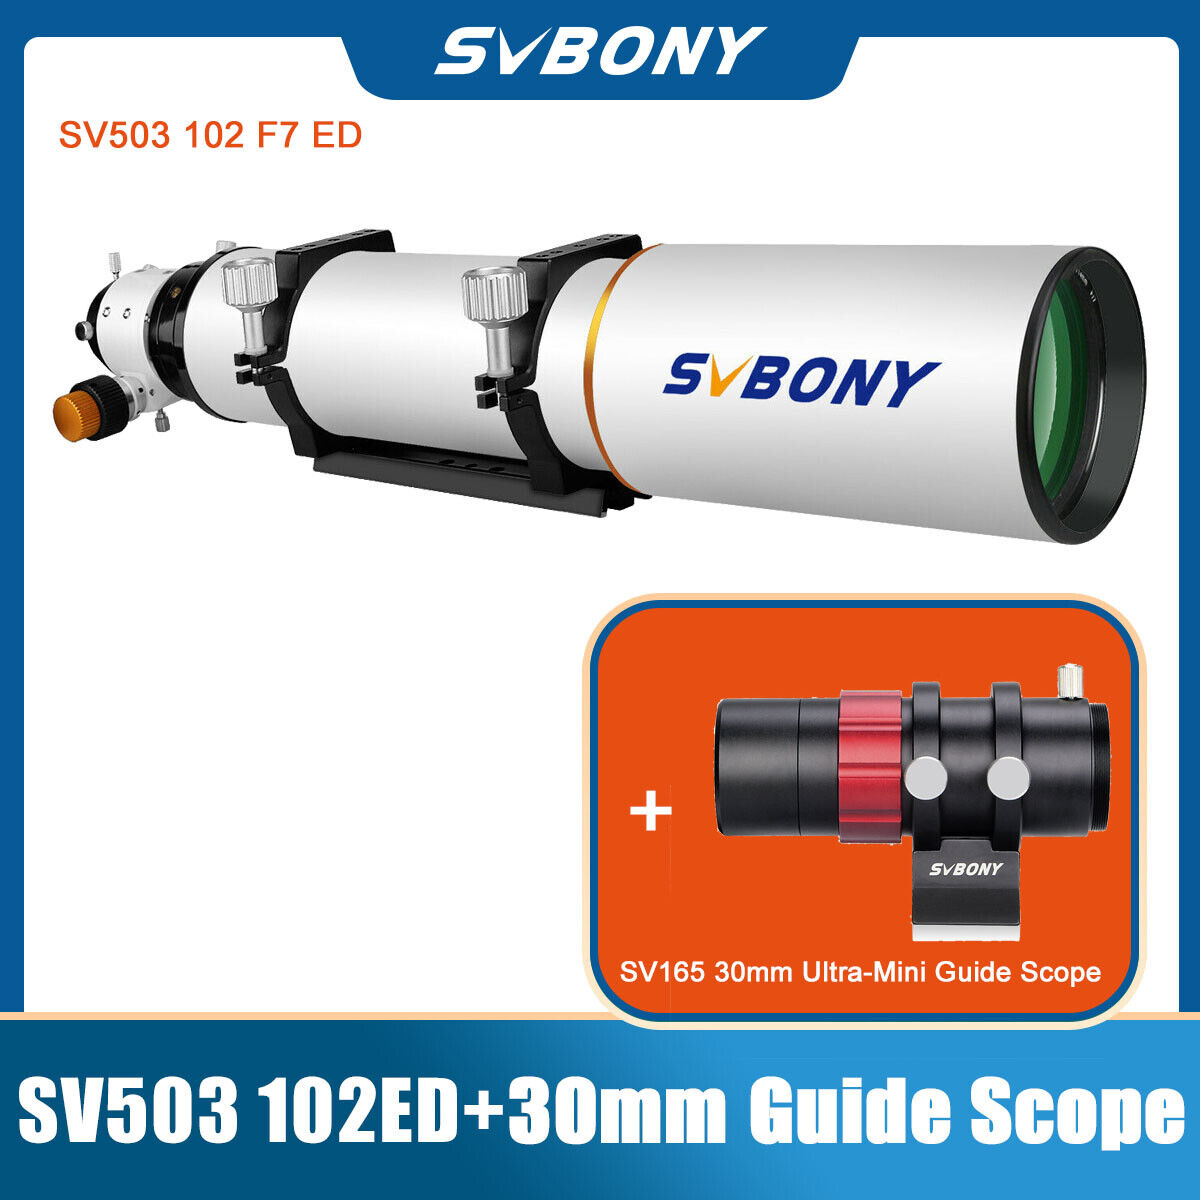 SVBONY SV503 102ED F7 Professional Refractor Telescopes OTA Focuser+Guide Scope